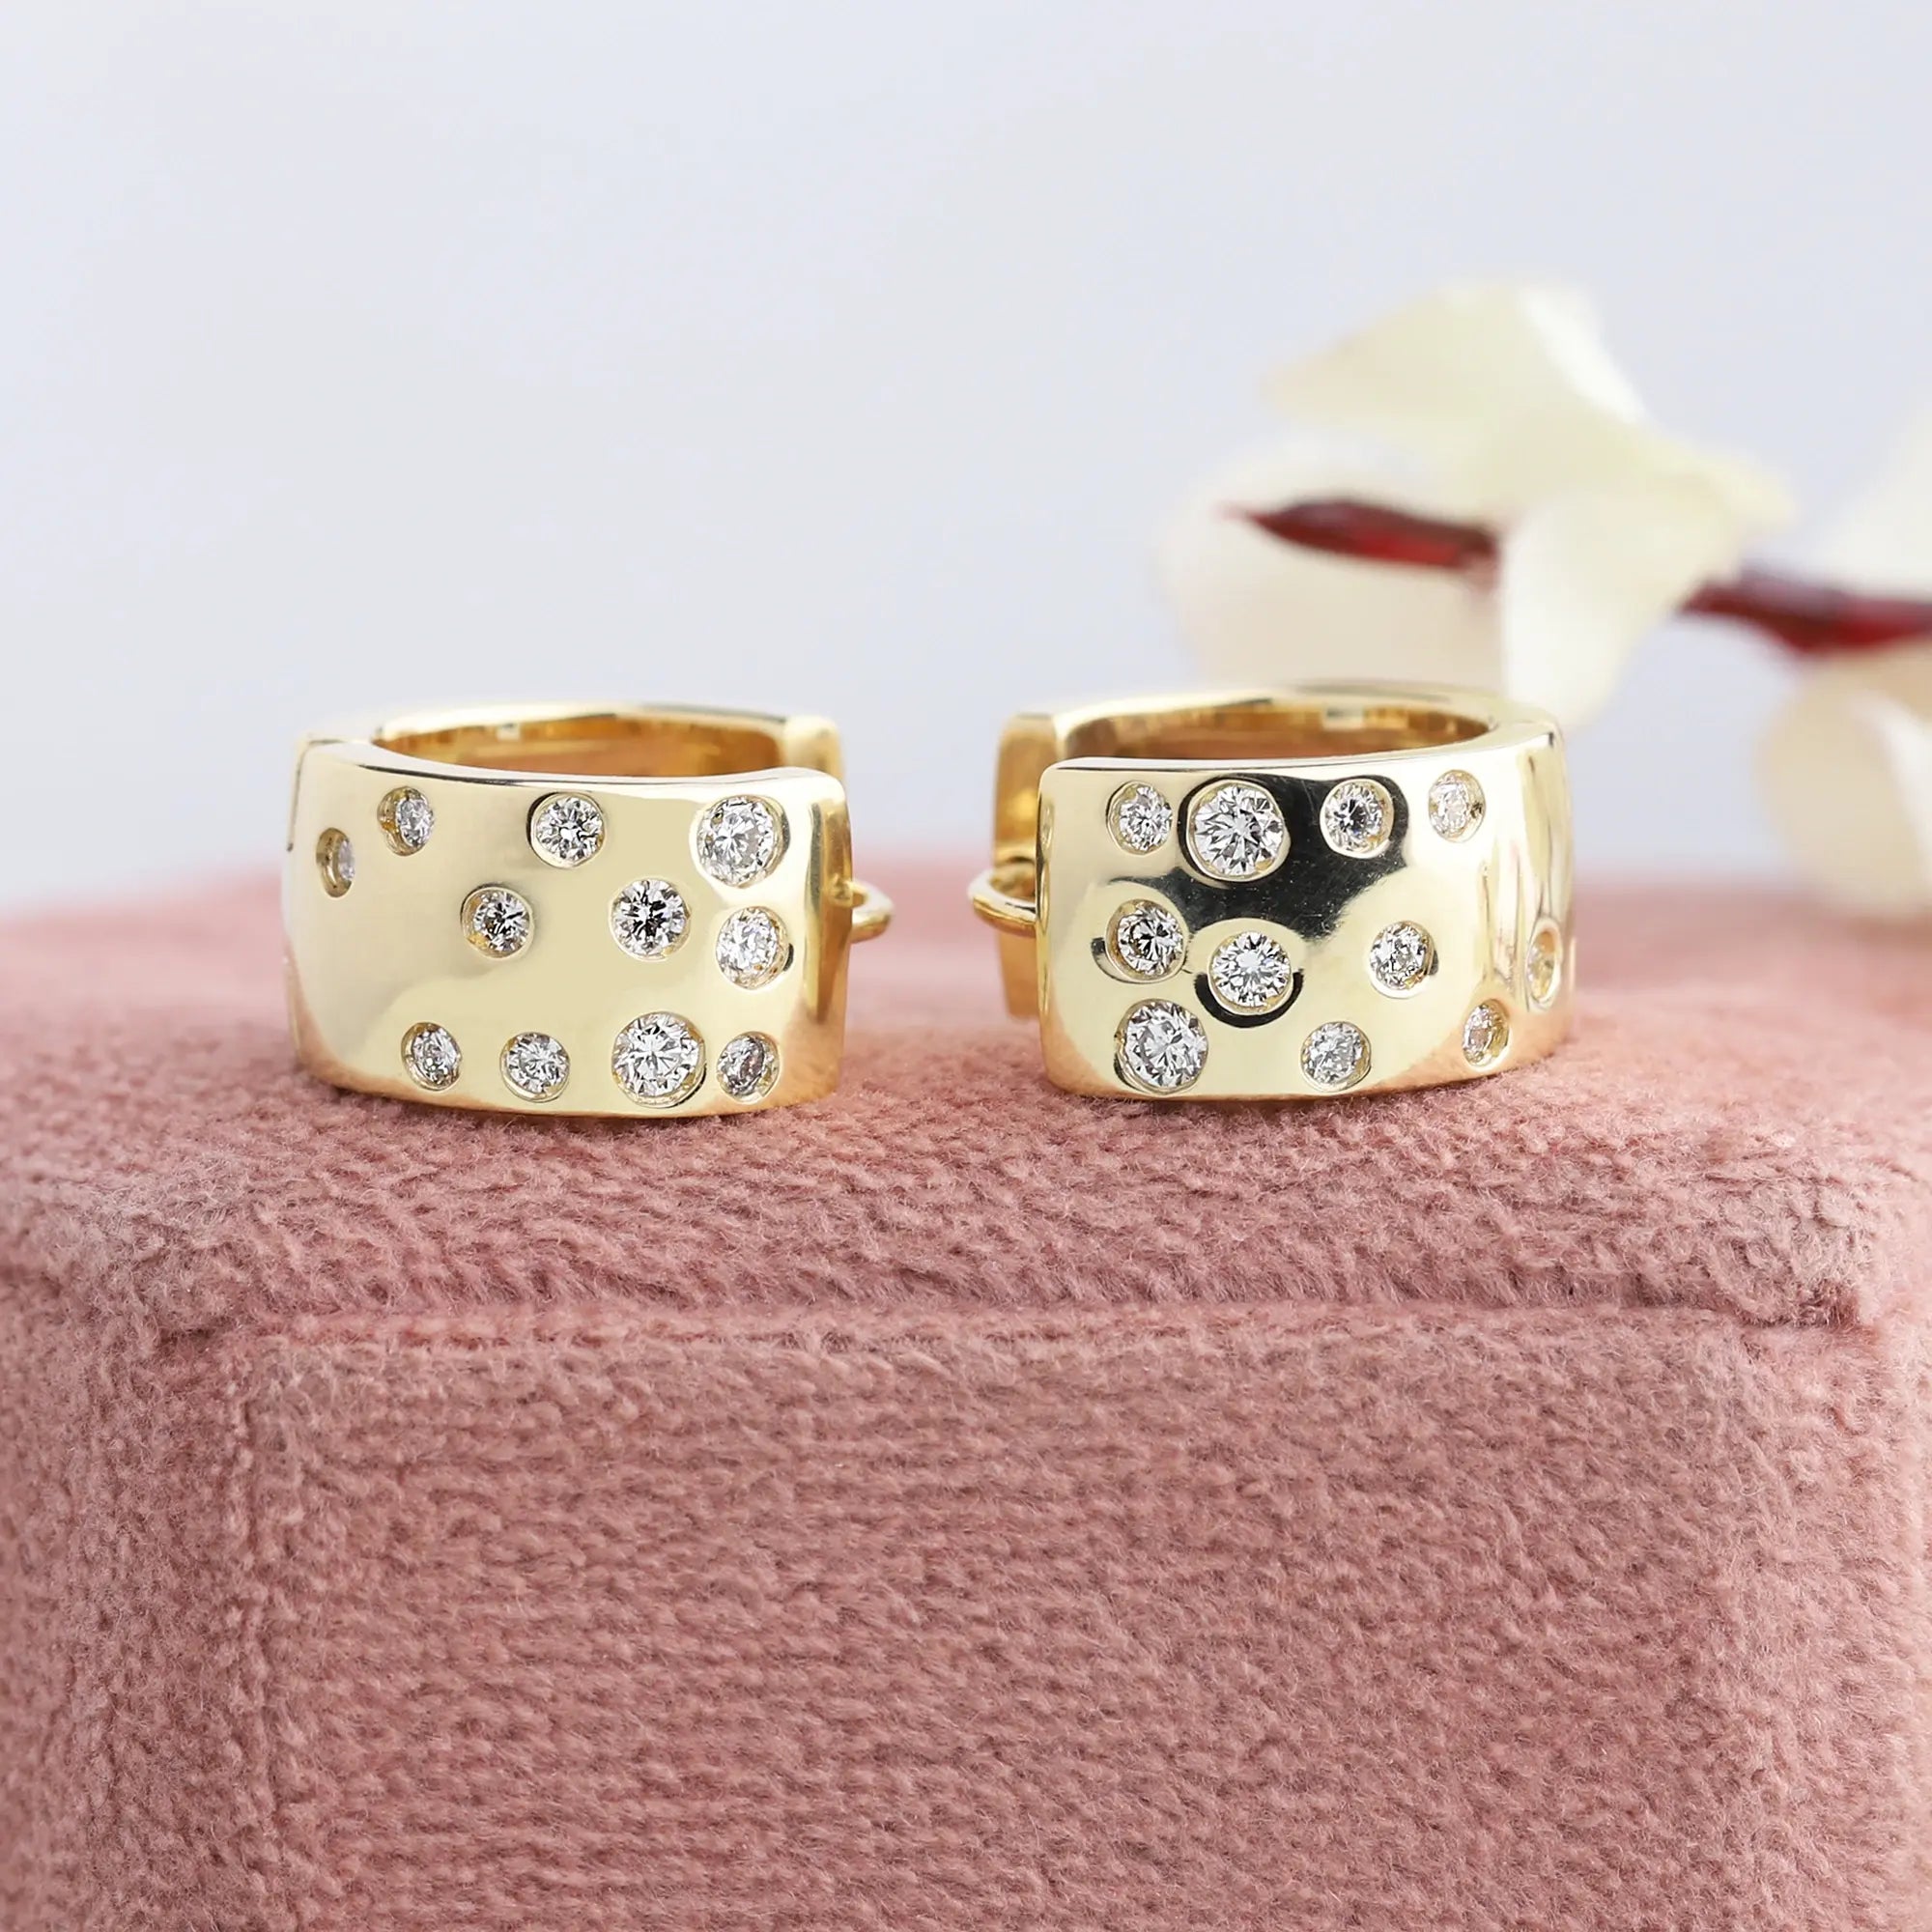 New Design Earrings Jewelry | 3 New Design Earrings | Wedding Accessories | Hoop  Earrings - Stud Earrings - Aliexpress